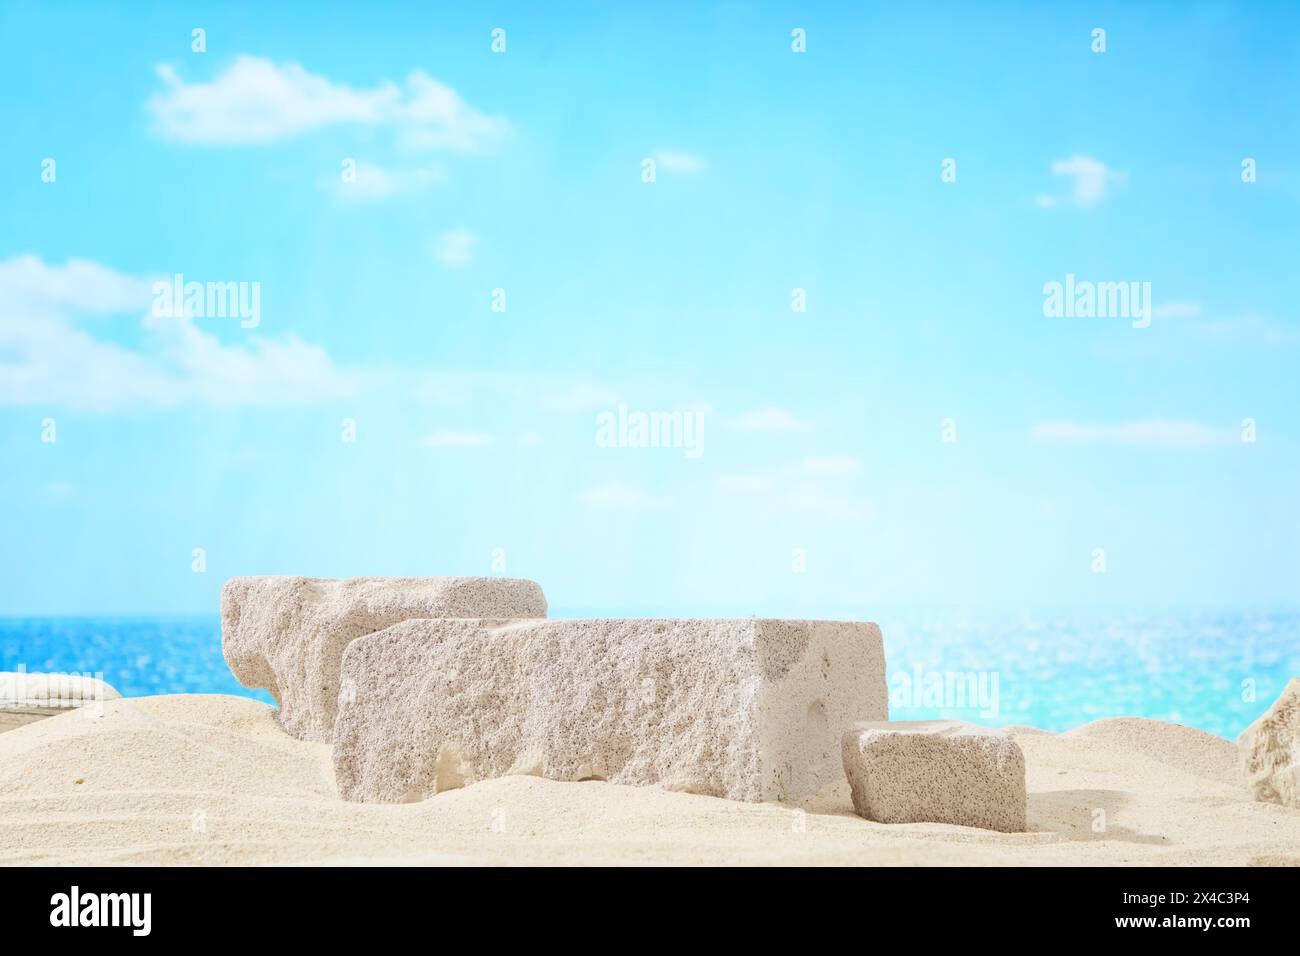 Scène de plage bleue avec ciel bleu, sable beige et blocs de pierre gris clair affichés. Scène pour le produit publicitaire ou cosmétique avec concept naturel, s Banque D'Images